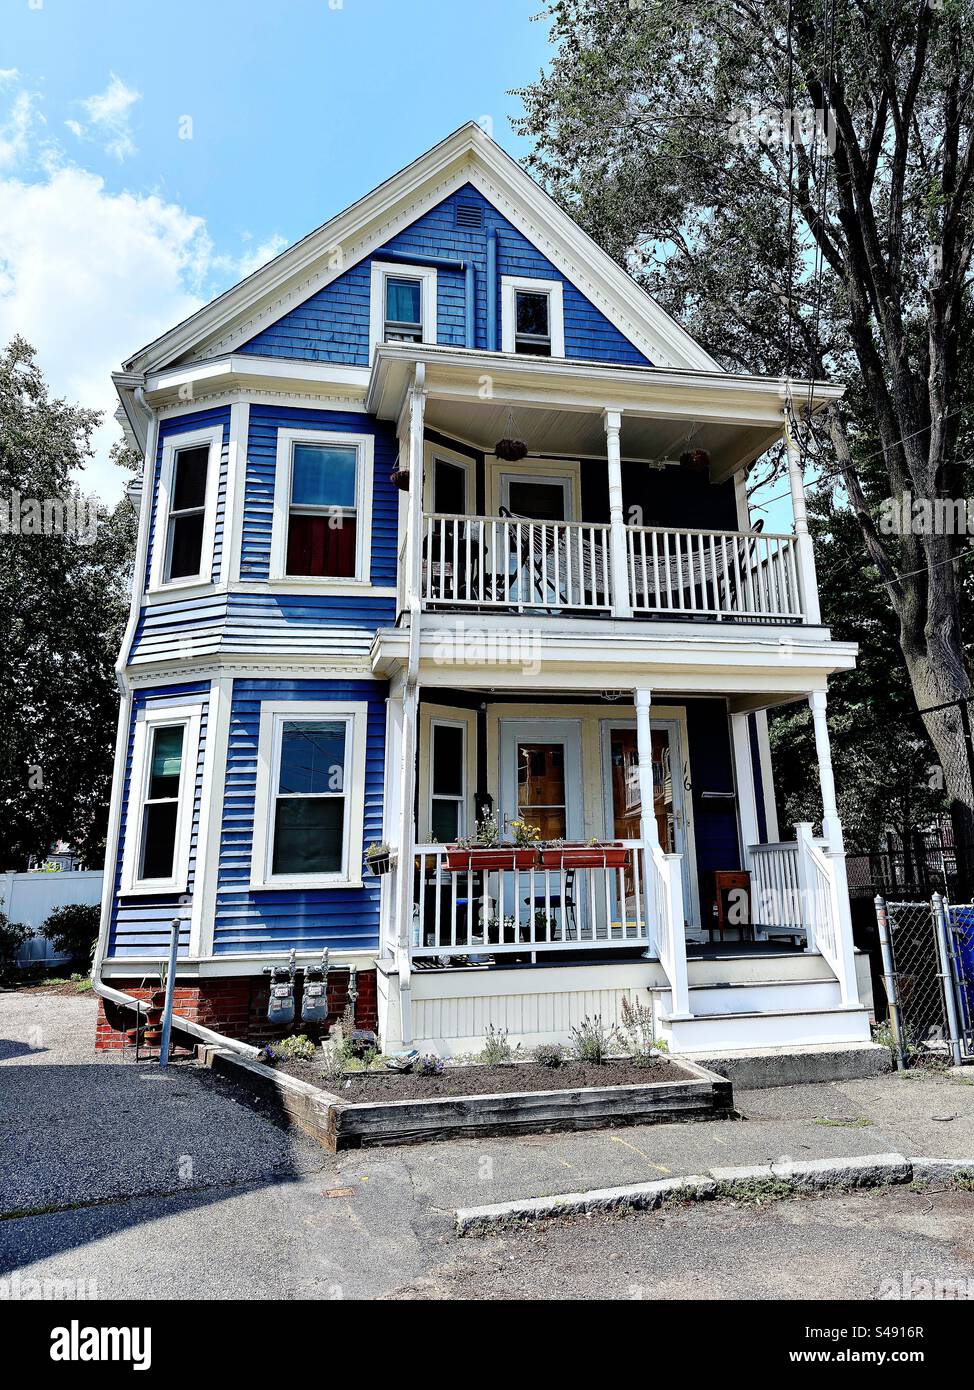 Résidence en bois de trois étages dans le quartier Davis Square de Somerville, Massachusetts, États-Unis. Bâtiment bleu avec garniture blanche et 2 porches. Banque D'Images